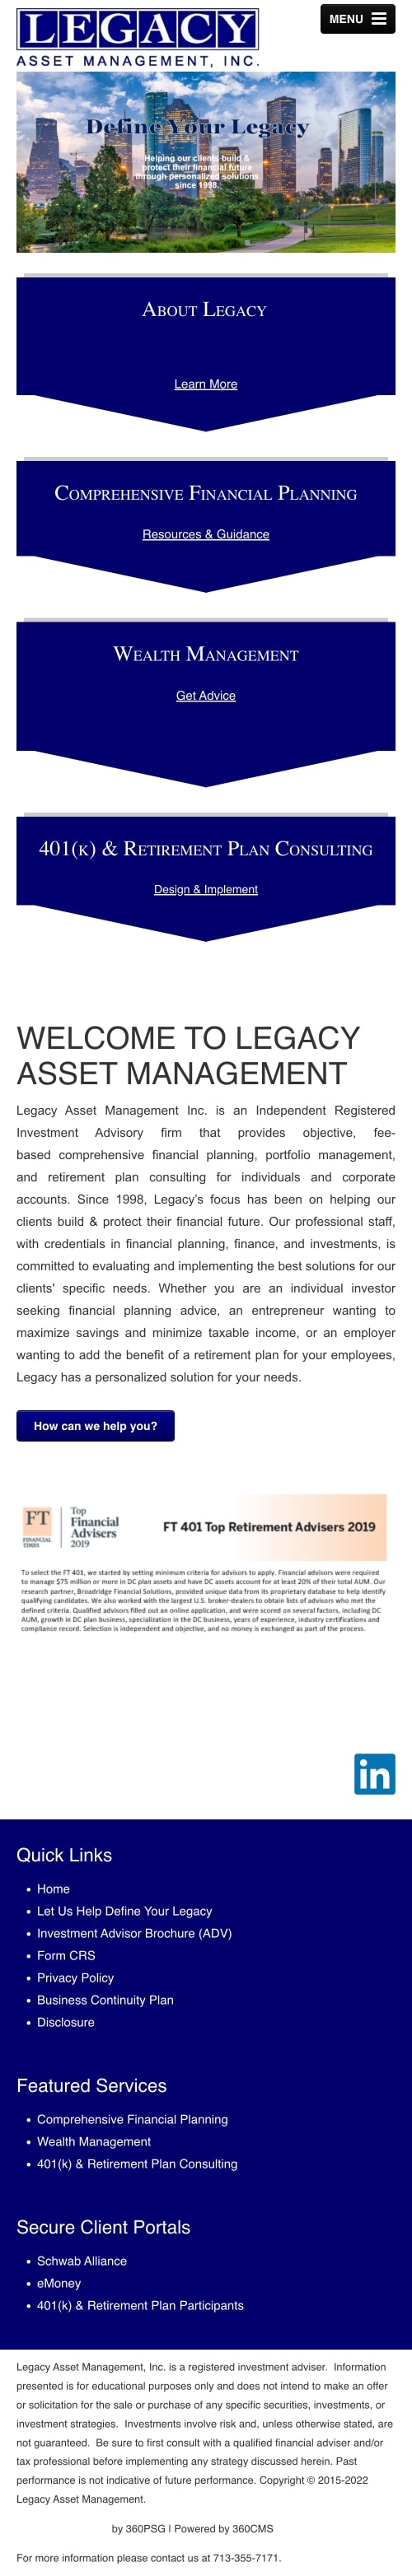 Legacy Asset Management Website - Mobile